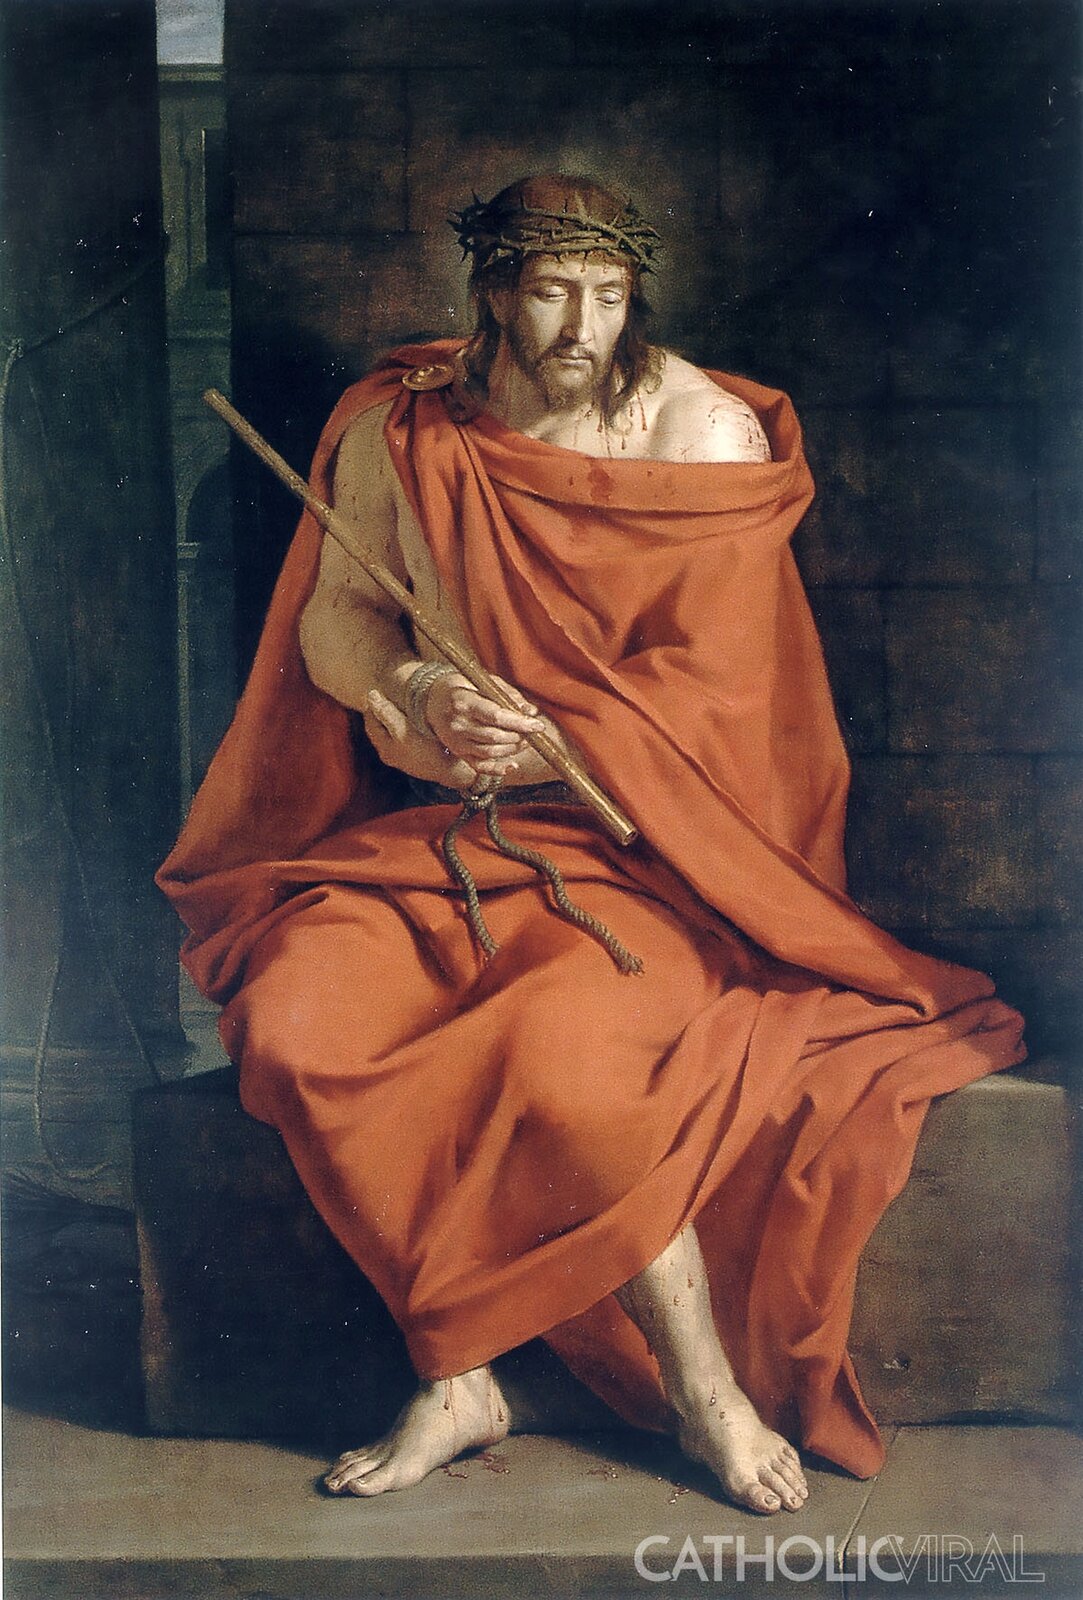 Ilustracja przedstawia obraz Philippe de Champaigne „Ecce Homo”. Na obrazie znajduje się Chrystus. Mężczyzna jest ubrany w pomarańczowy płaszcz. Na głowie ma koronę cierniową. Mężczyzna siedzi na betonowym wzniesieniu. Ręce ma związane sznurem. W jednej dłoni trzyma długi kij. Na jego ciele widoczne są liczne rany, z których sączy się krew. Za postacią znajduje się proste, ciemne tło.